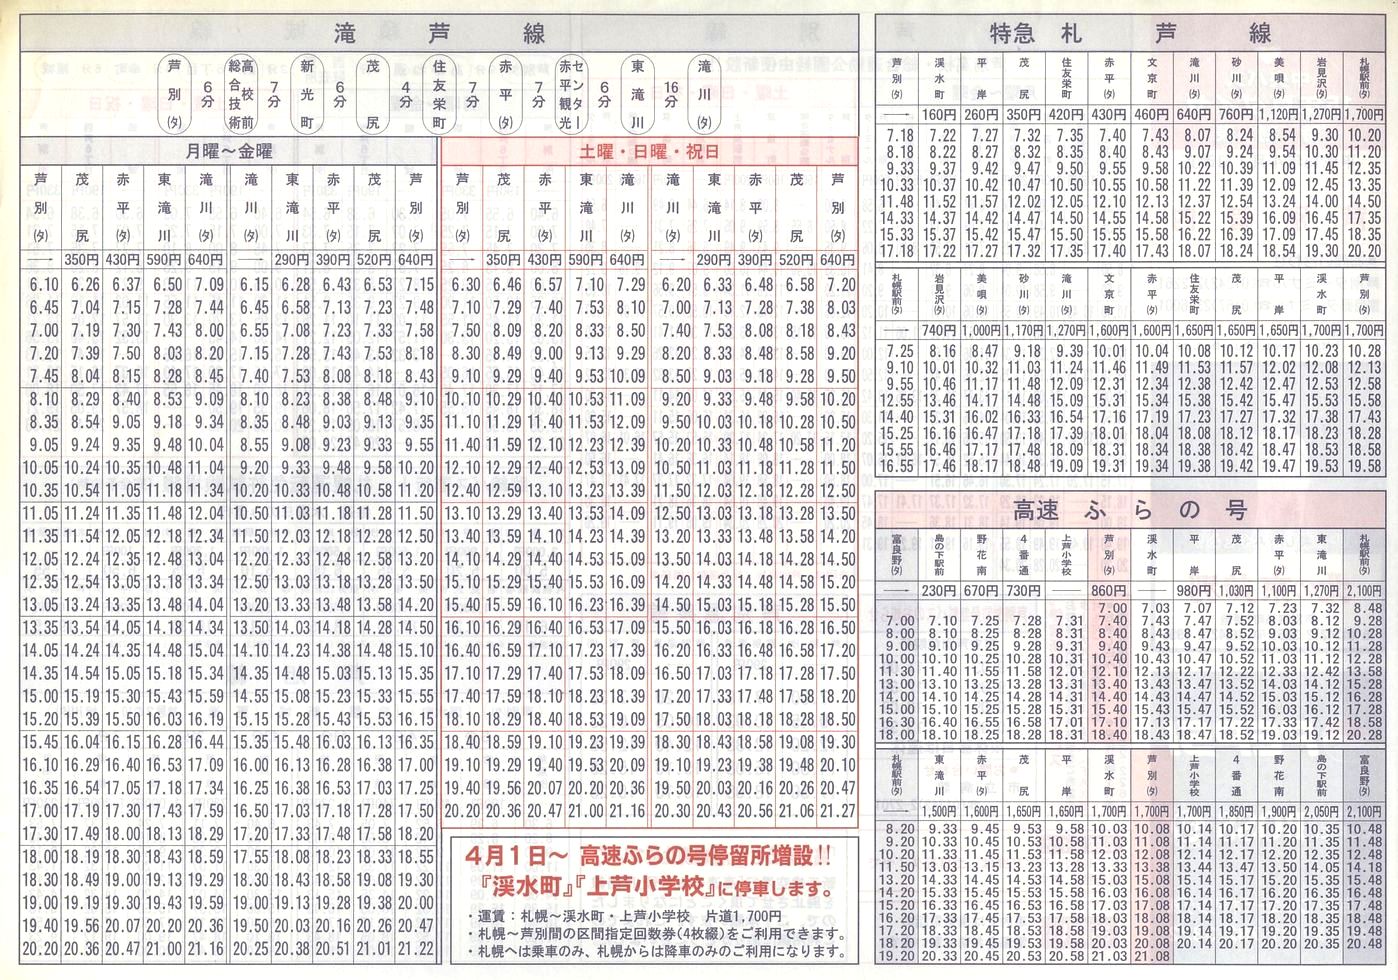 2003-04-01改正_北海道中央バス(空知)_芦別管内線時刻表裏面